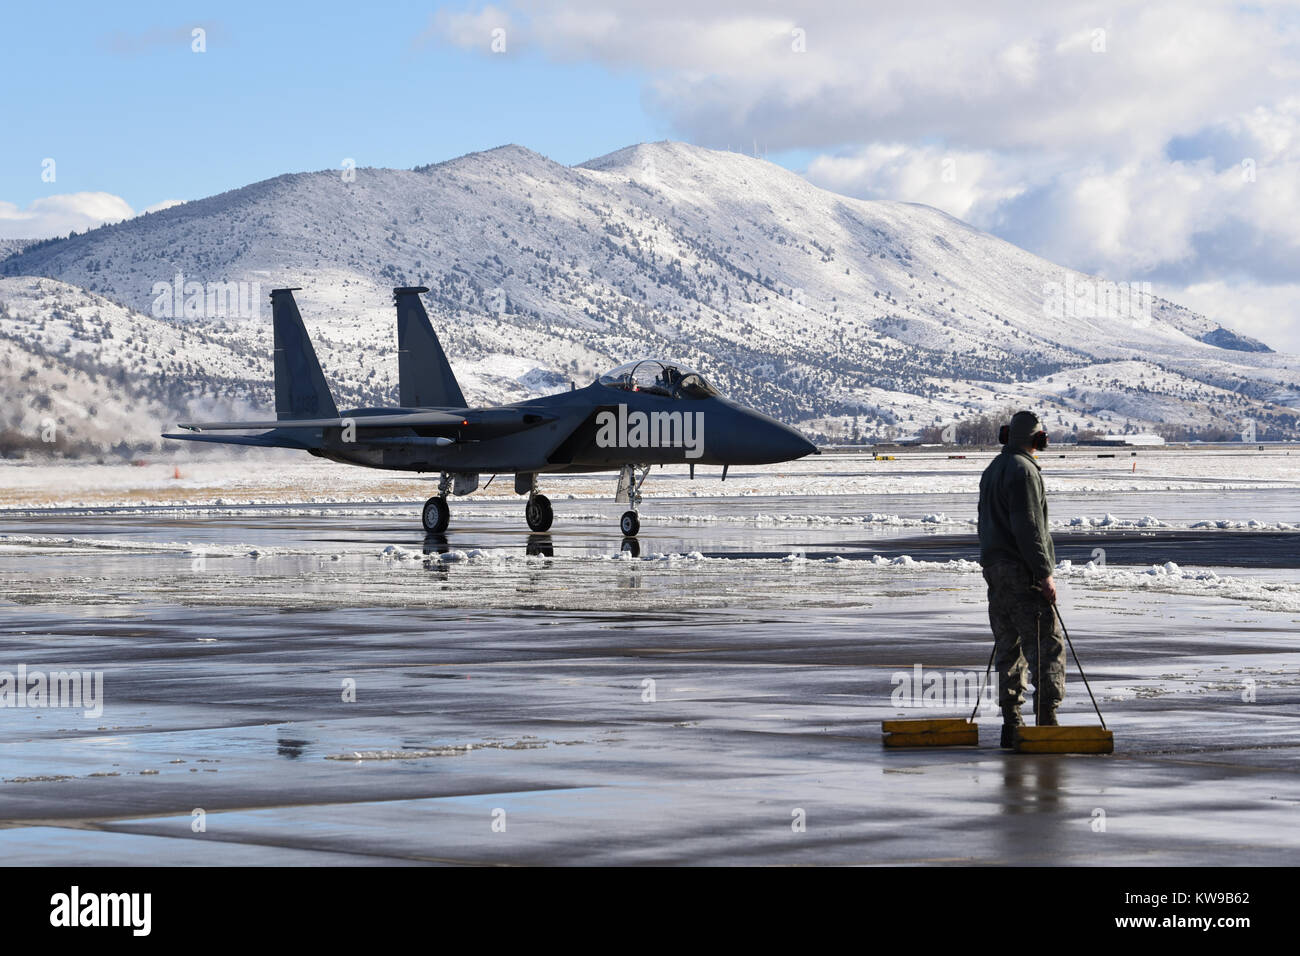 Ein US Air Force Mitglied aus der 173Rd Fighter Wing bereitet Kreiden für eine F-15 mit Santa Claus an Bord, Dez. 3, 2017, Kingsley, O zu platzieren Stockfoto